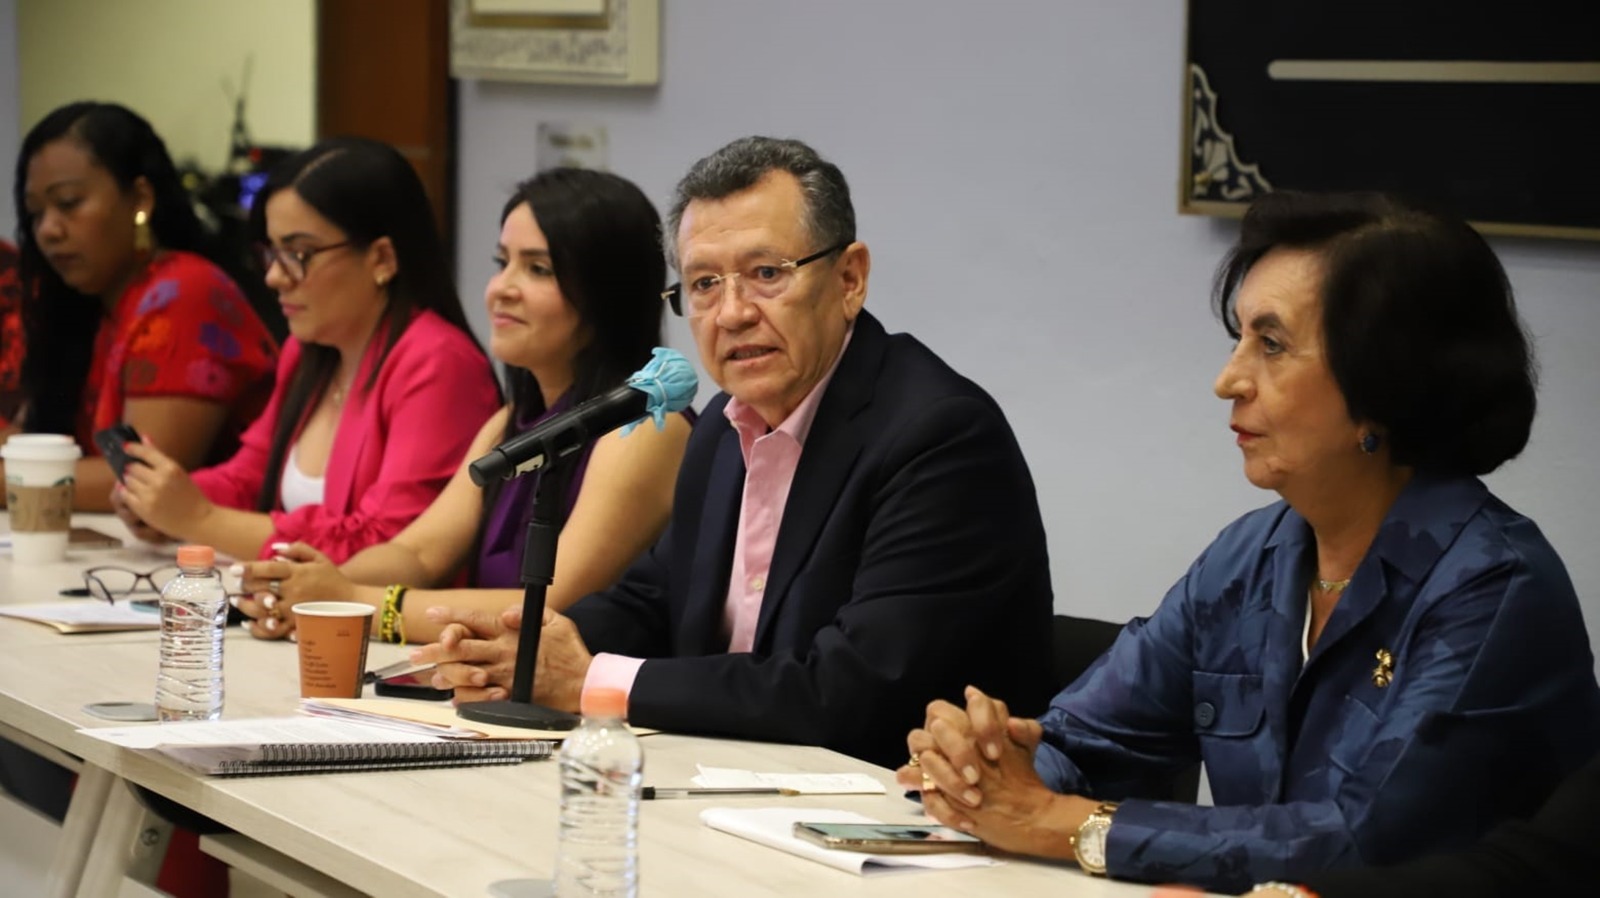 Es urgente legislar para garantizar espacios seguros para mujeres: Héctor Apreza